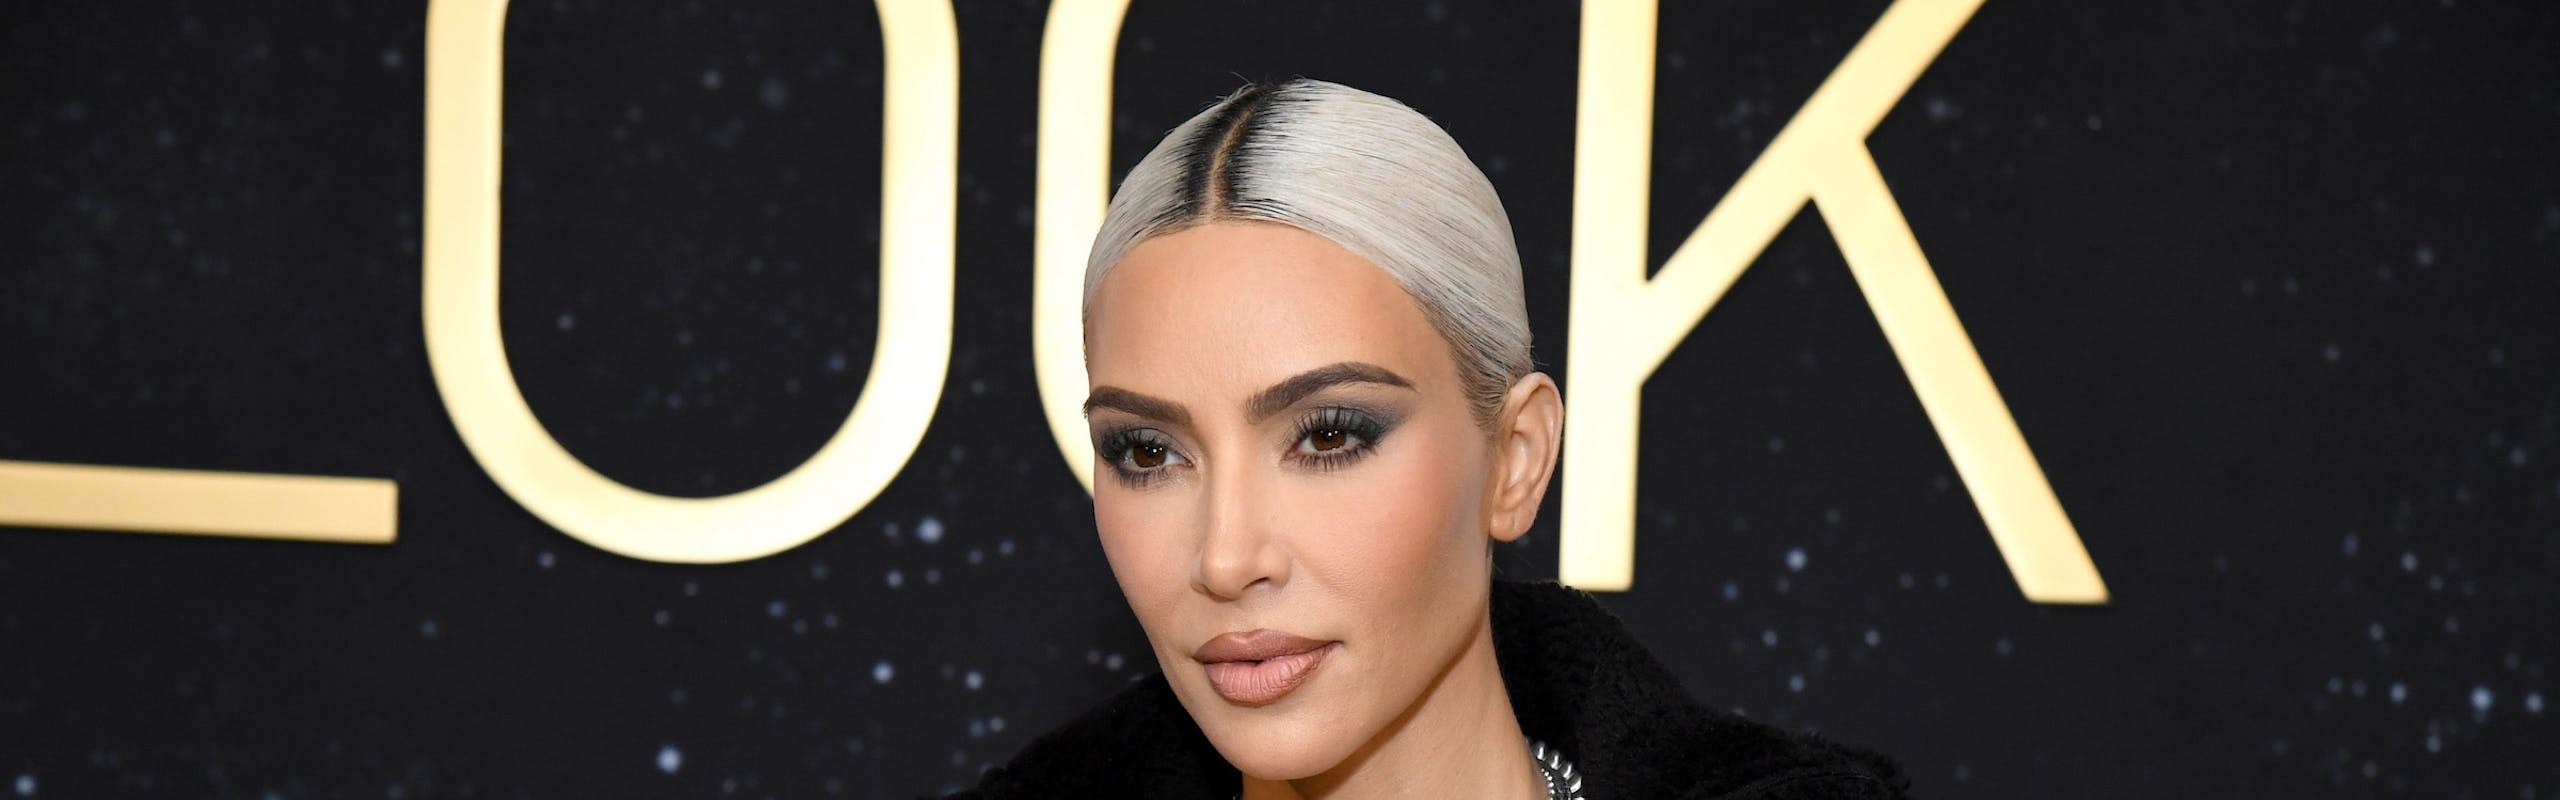 Kim Kardashian was involved in a celebrity jewelry heist in 2016